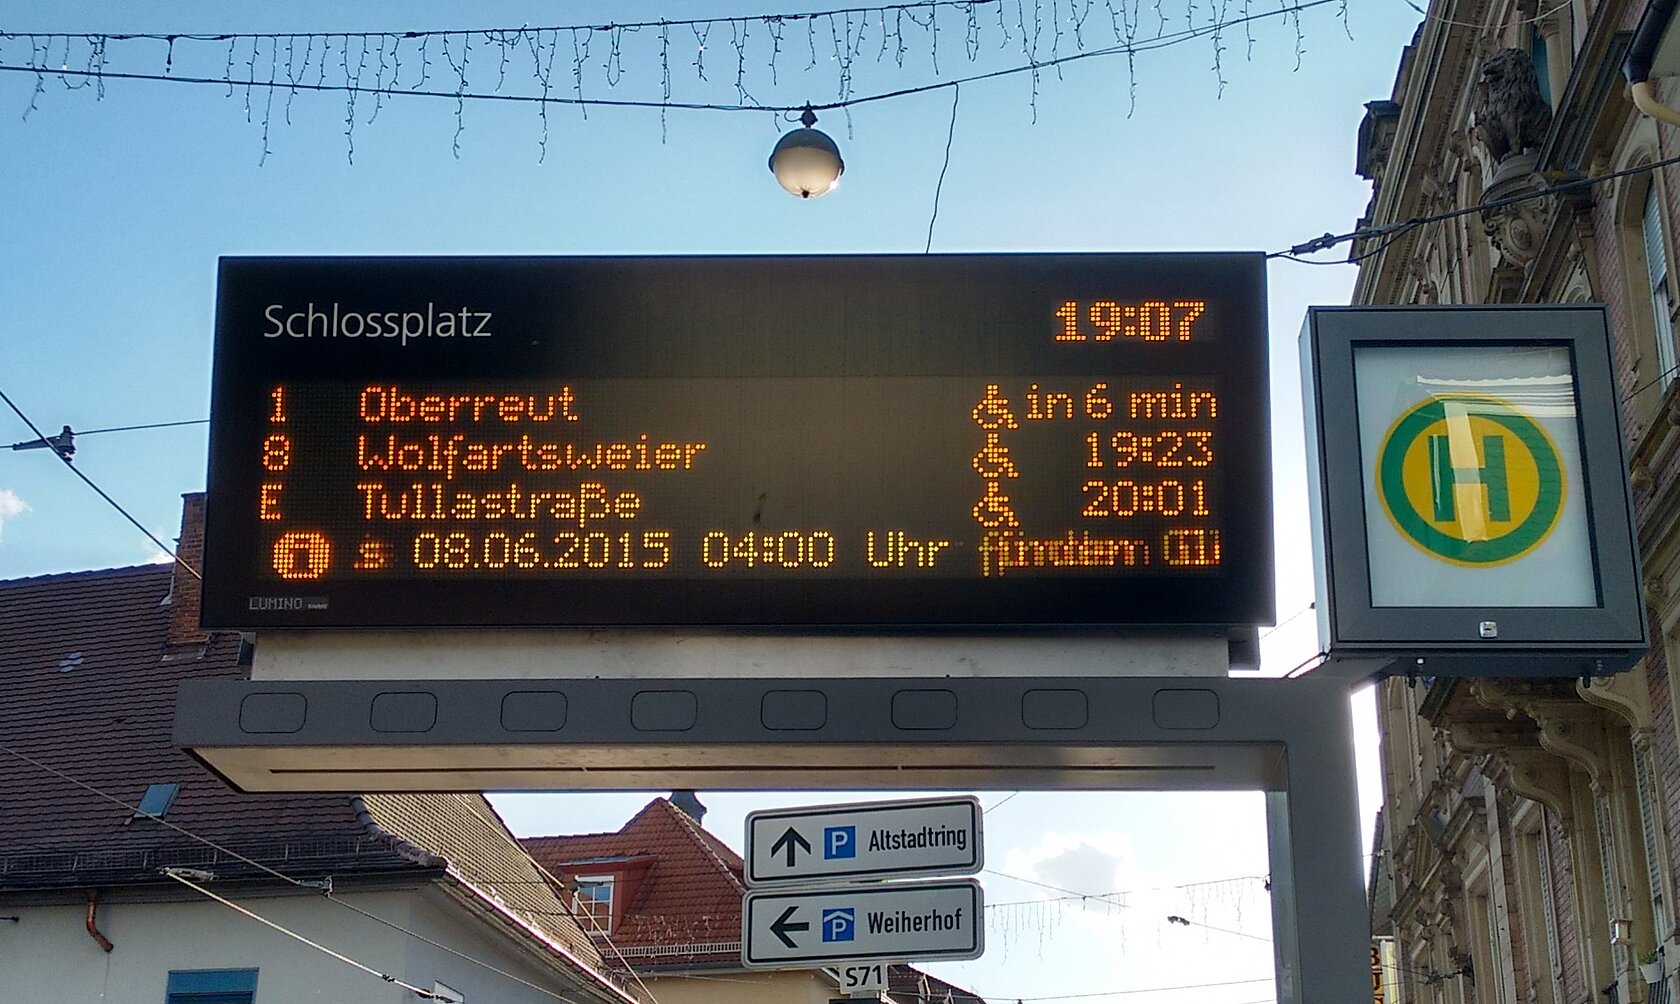 digital destination board of Karlsruhe public transport KVV